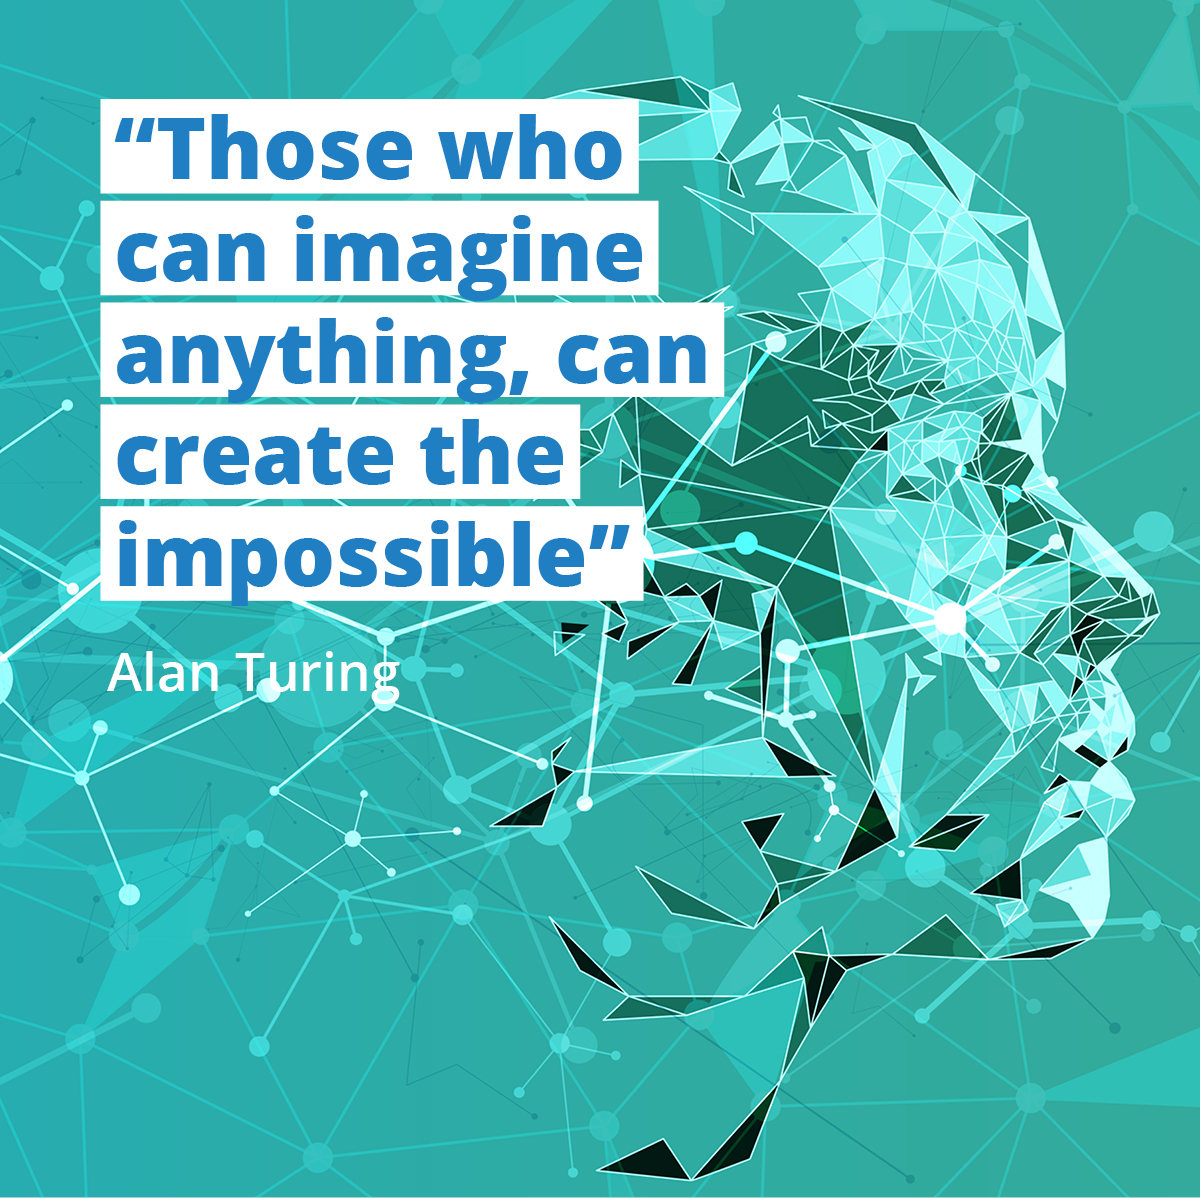 Das #Zitat des Tages ist von Alan Turing - Vater der #künstlichenIntelligenz.🤓
Stimmst du seiner Aussage zu oder gibt es Grenzen im Unmöglichen?

#WednesdayWisdom
#bwki #MINT #ki #maschinellesLernen #wettbewerb #alanturing #quoteoftheday